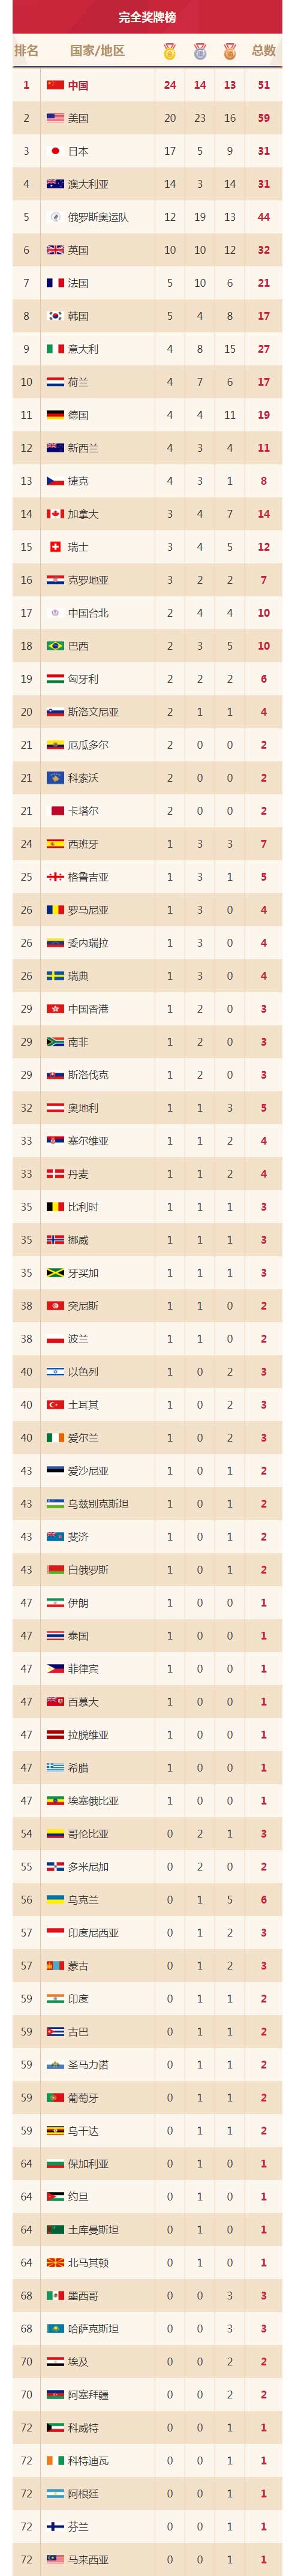 2008奥运会奖牌榜排名的简单介绍